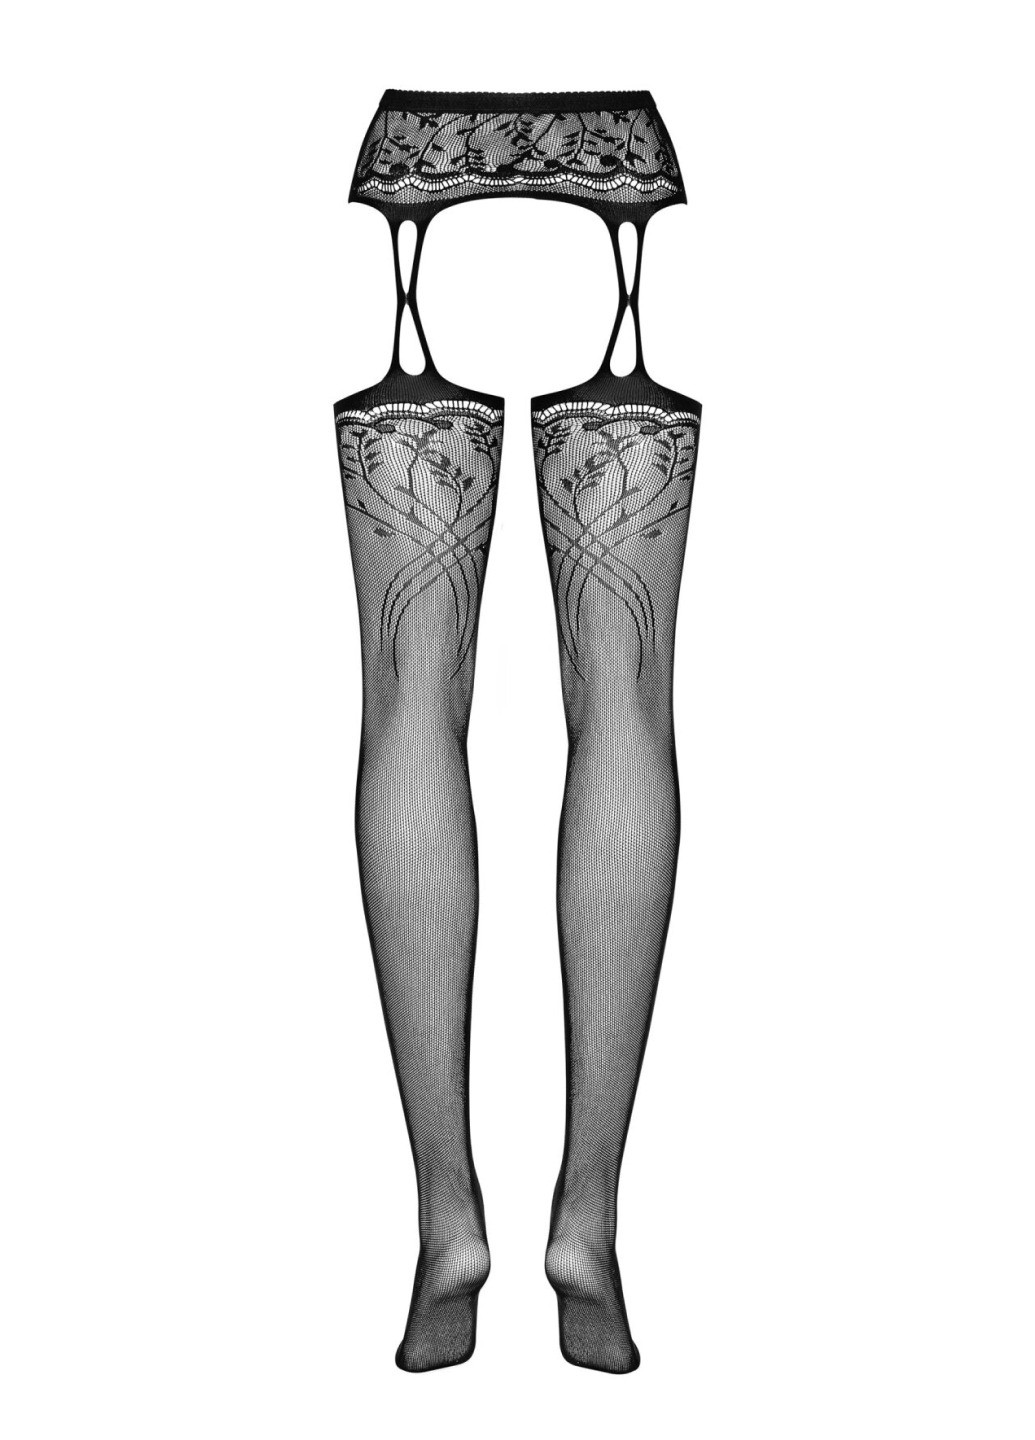 Панчохи-стокінги з рослинним малюнком Garter stockings S206 black S/M/L чорні, імітація га Obsessive (275732966)